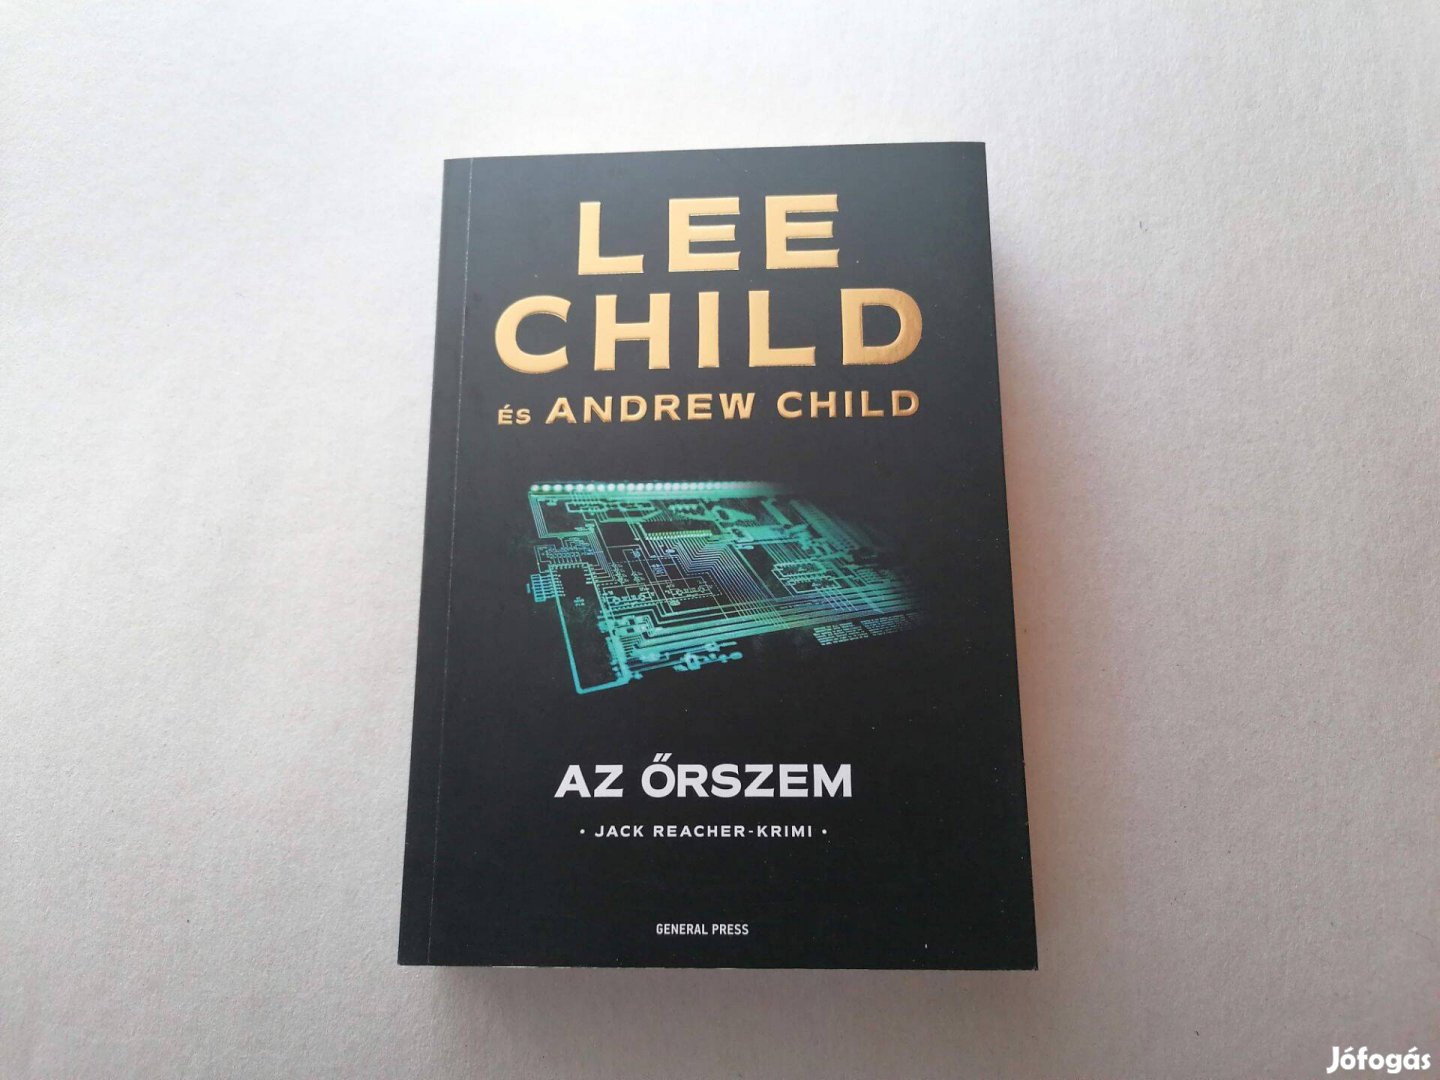 Lee Child: Az őrszem című Új könyve akciósan eladó !